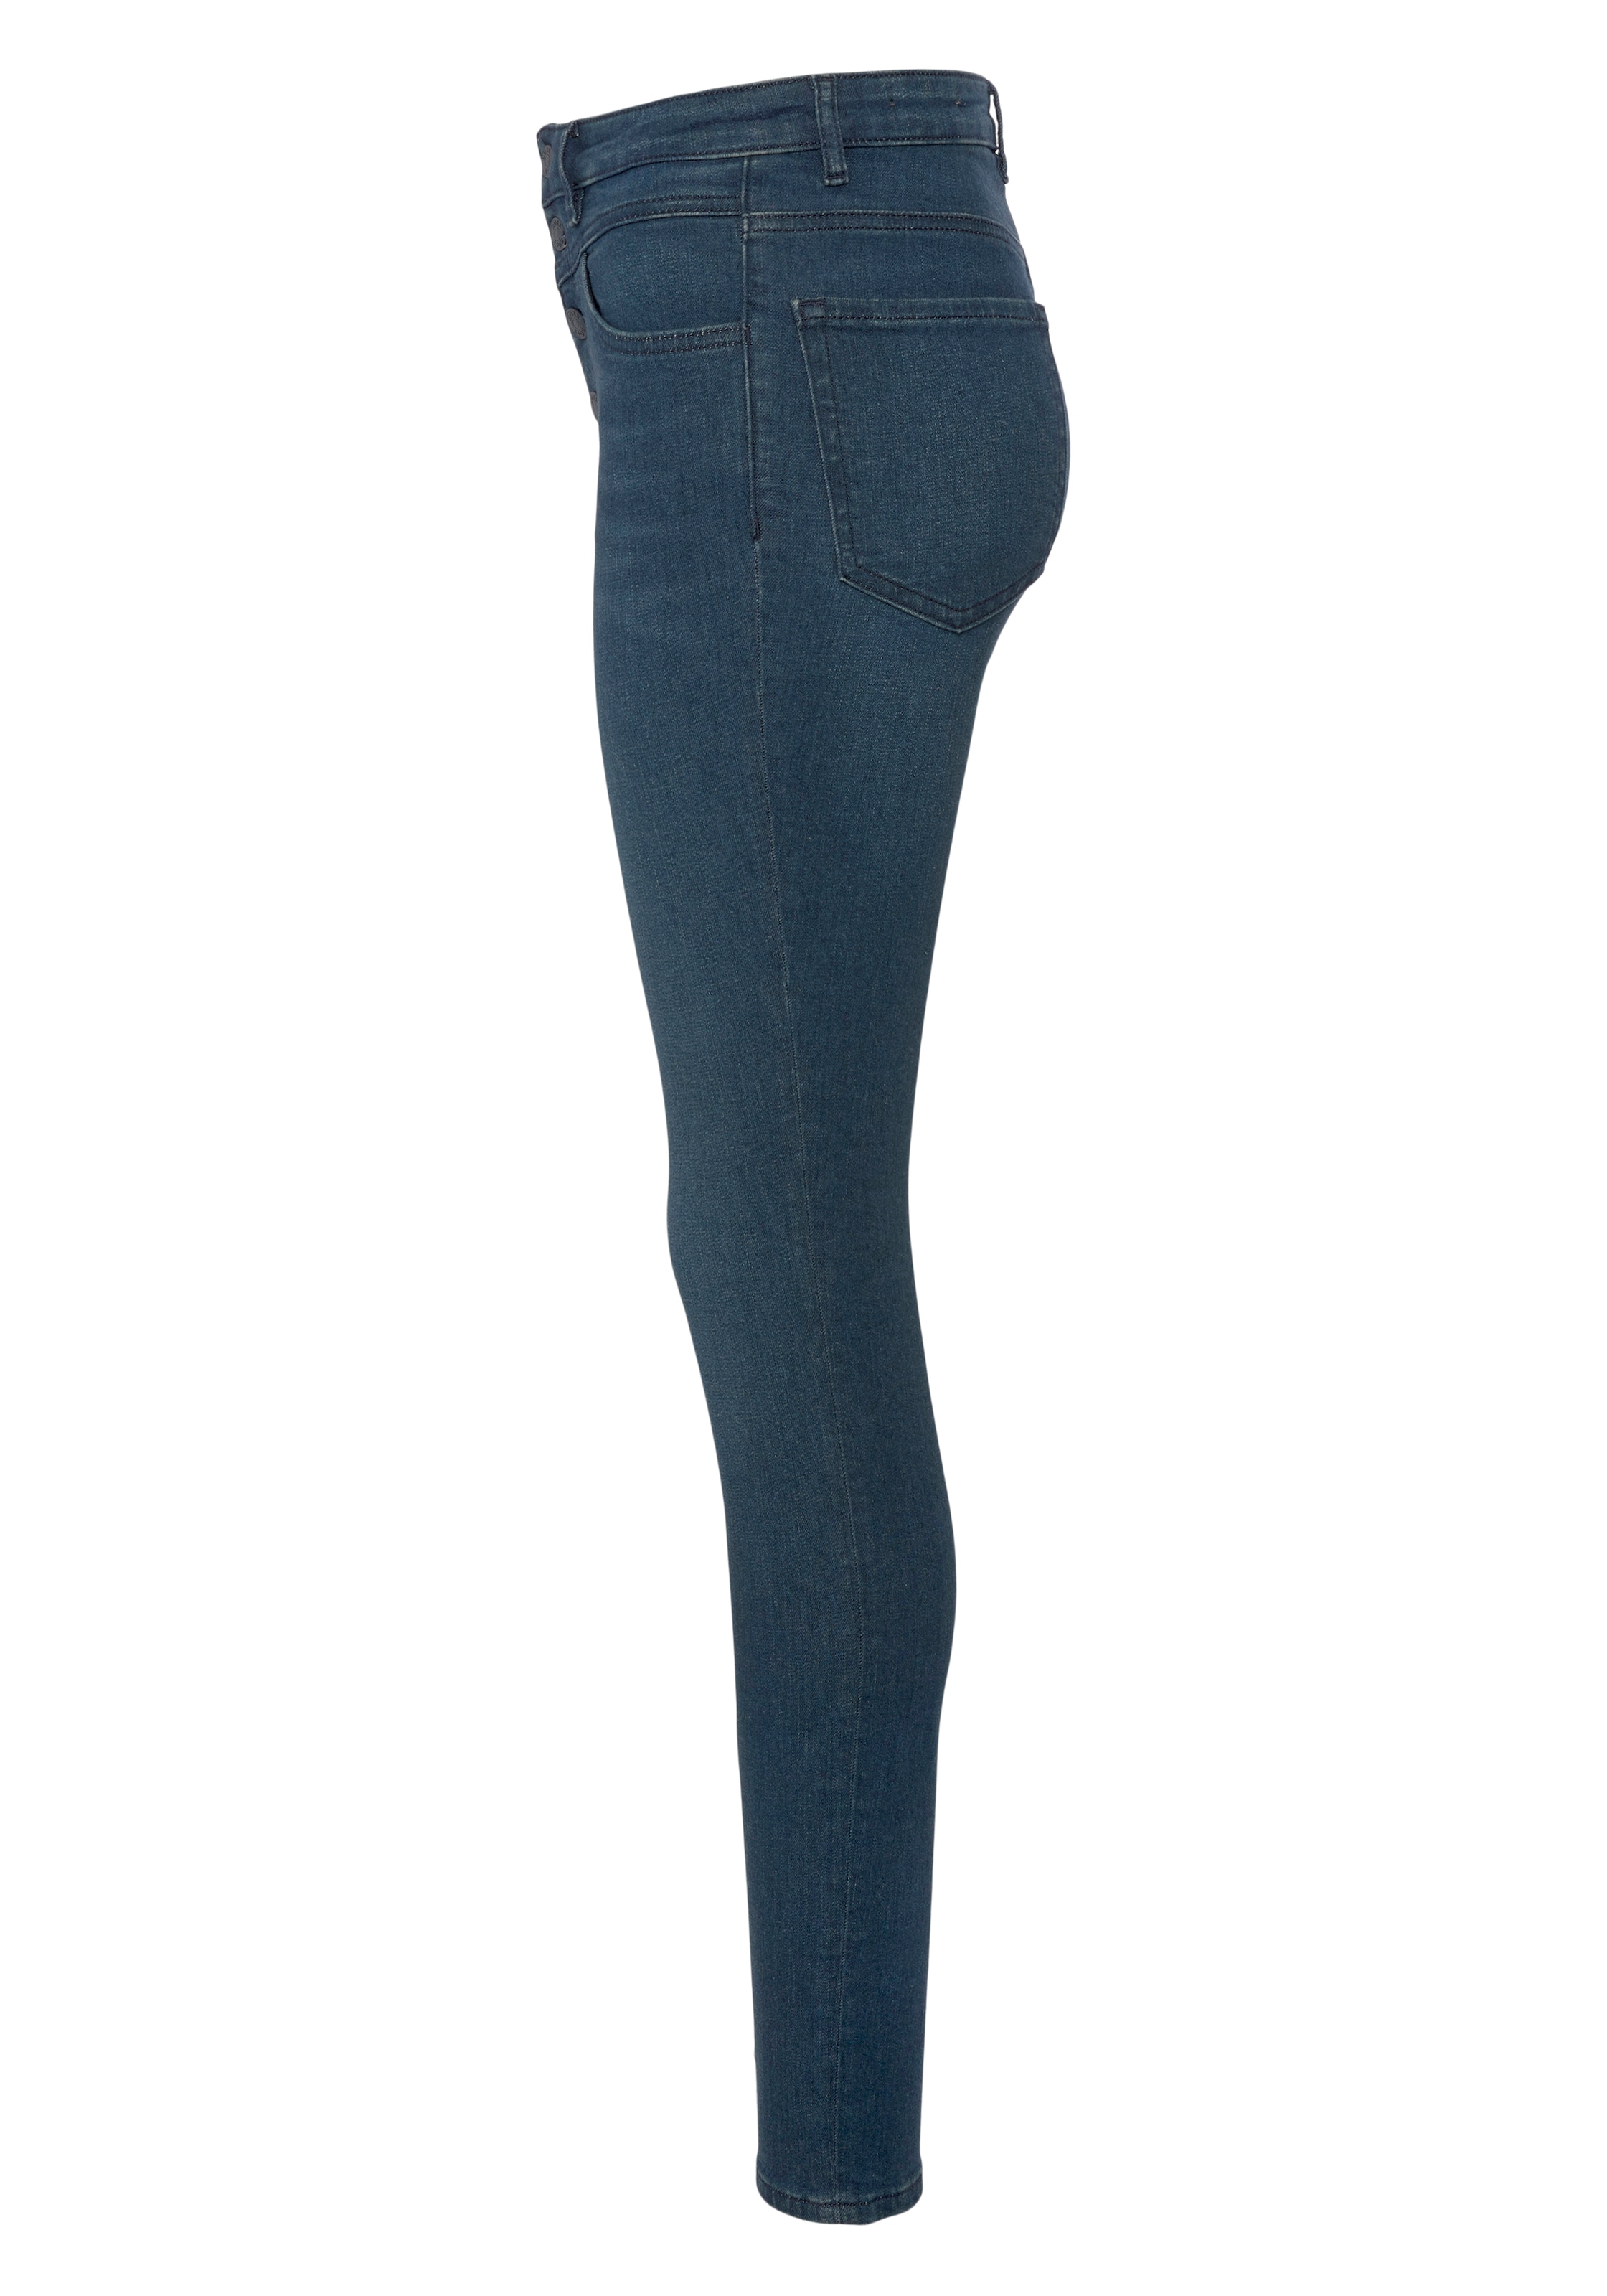 1.1«, ORANGE Button-Fly »KITT BOSS HR mit Verschluss Skinny-fit-Jeans kaufen SKINNY